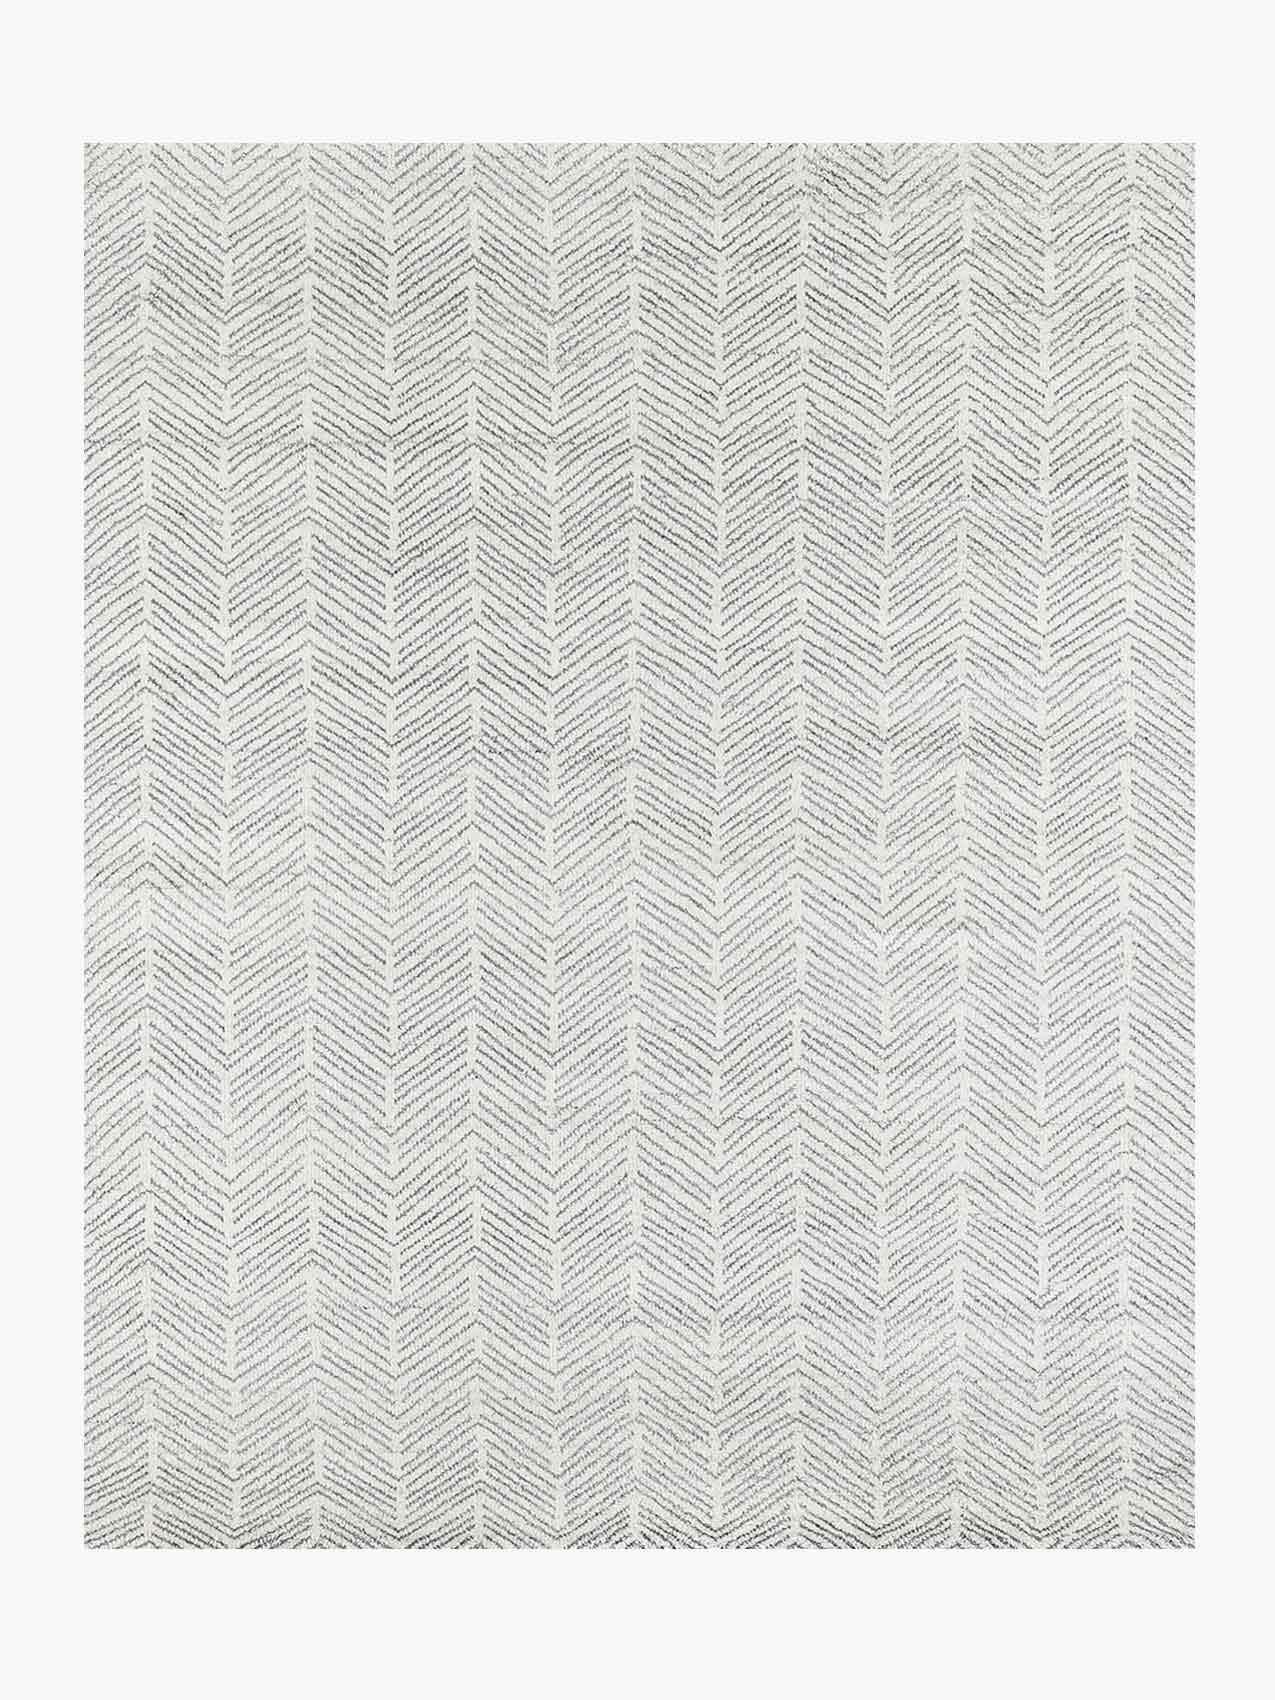 For Sale: White (White/Silver) Ben Soleimani Alia Rug– Hand-woven Chevron Wool + Viscose Black/Gray 12'x15'